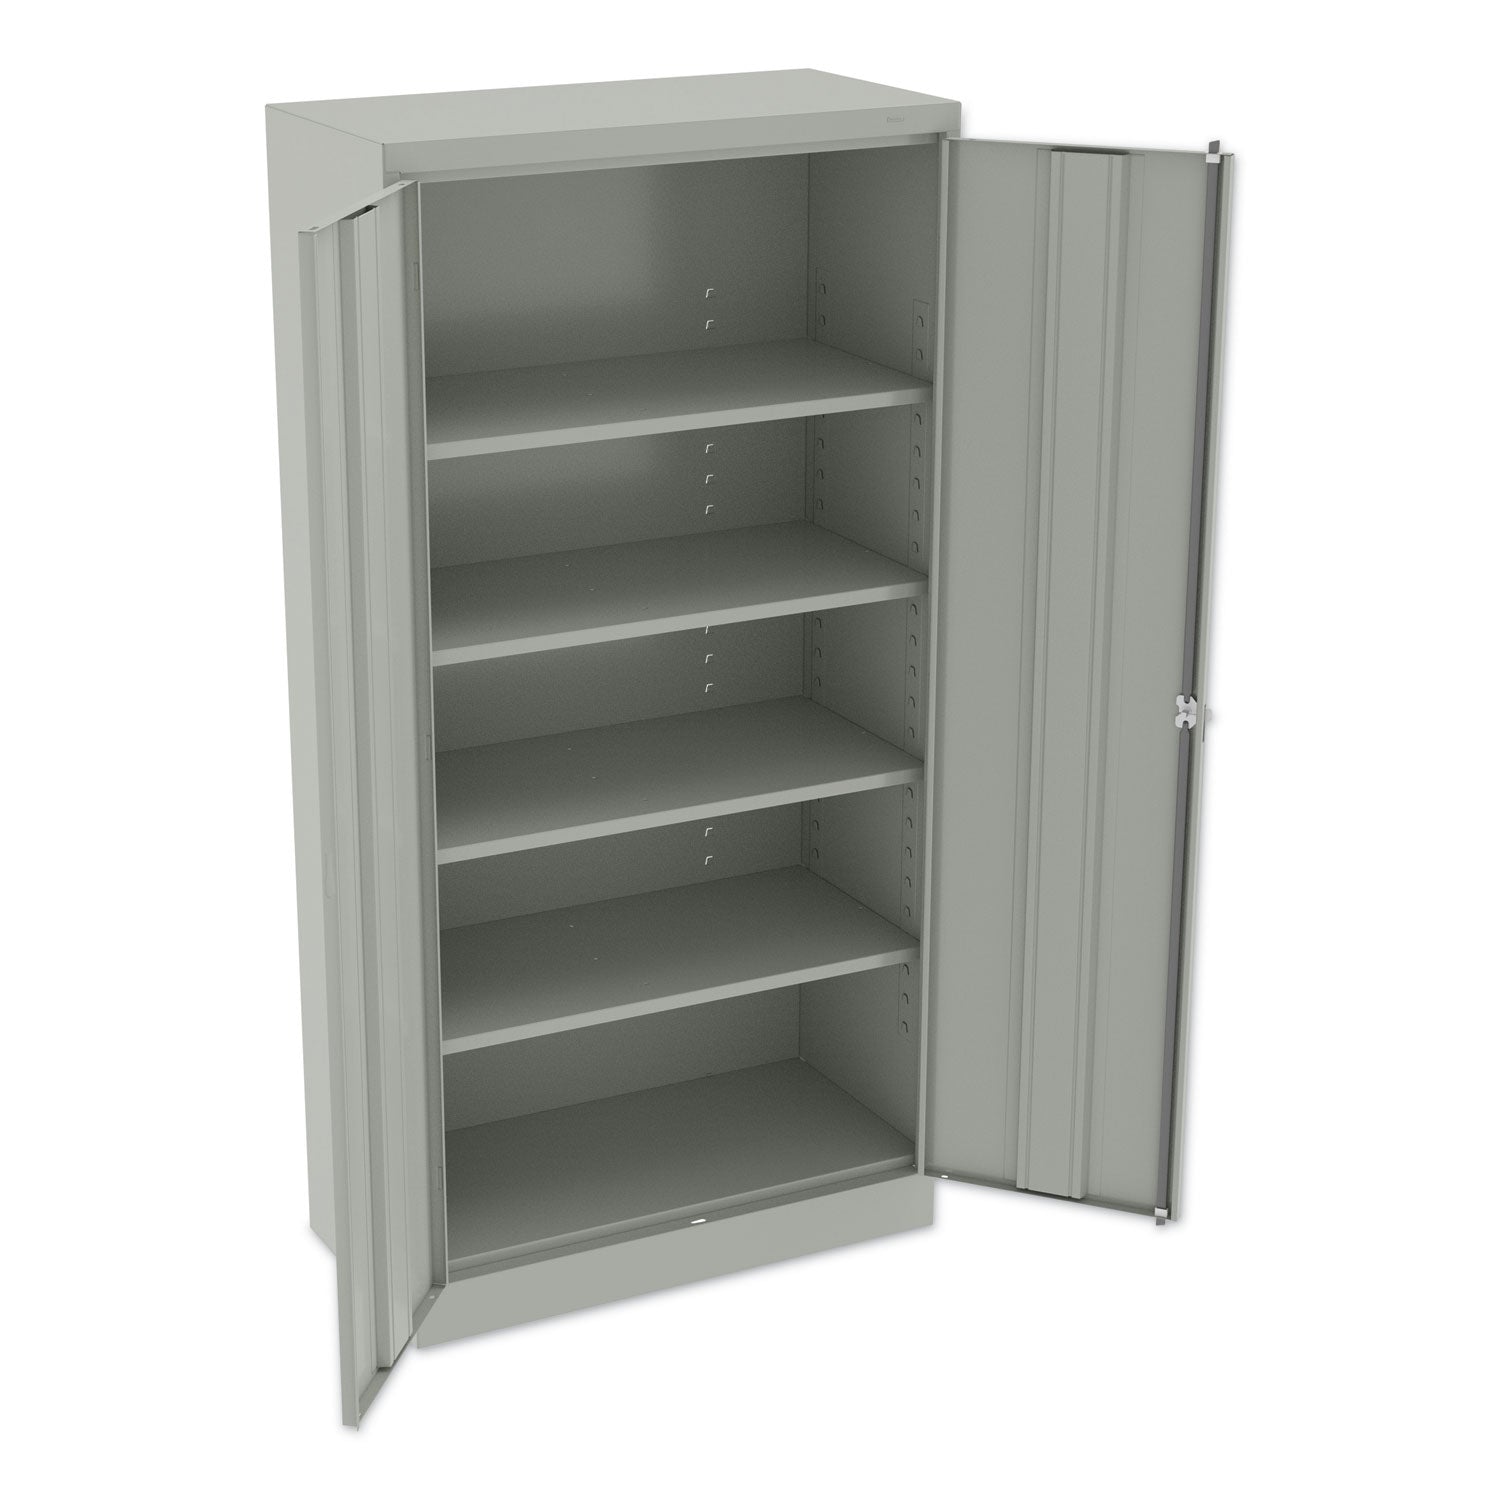 72" High Standard Cabinet (Assembled), 36w x 18d x 72h, Light Gray - 